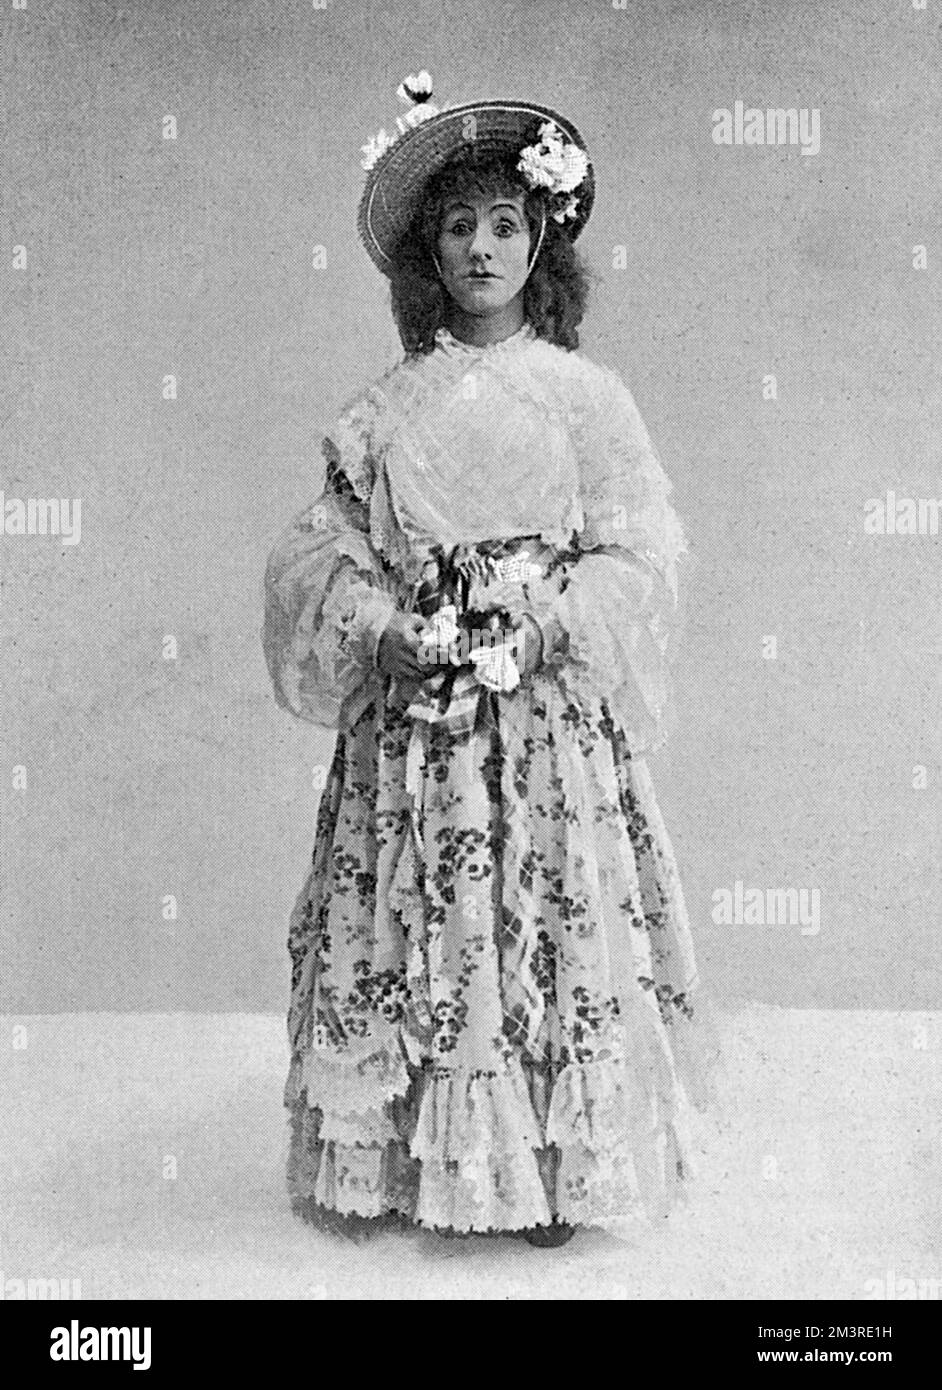 DaN Leno comme mère Goose habillé dans la robe extravagante qu'elle adopte quand elle vient dans sa fortune. Date: 1903 Banque D'Images